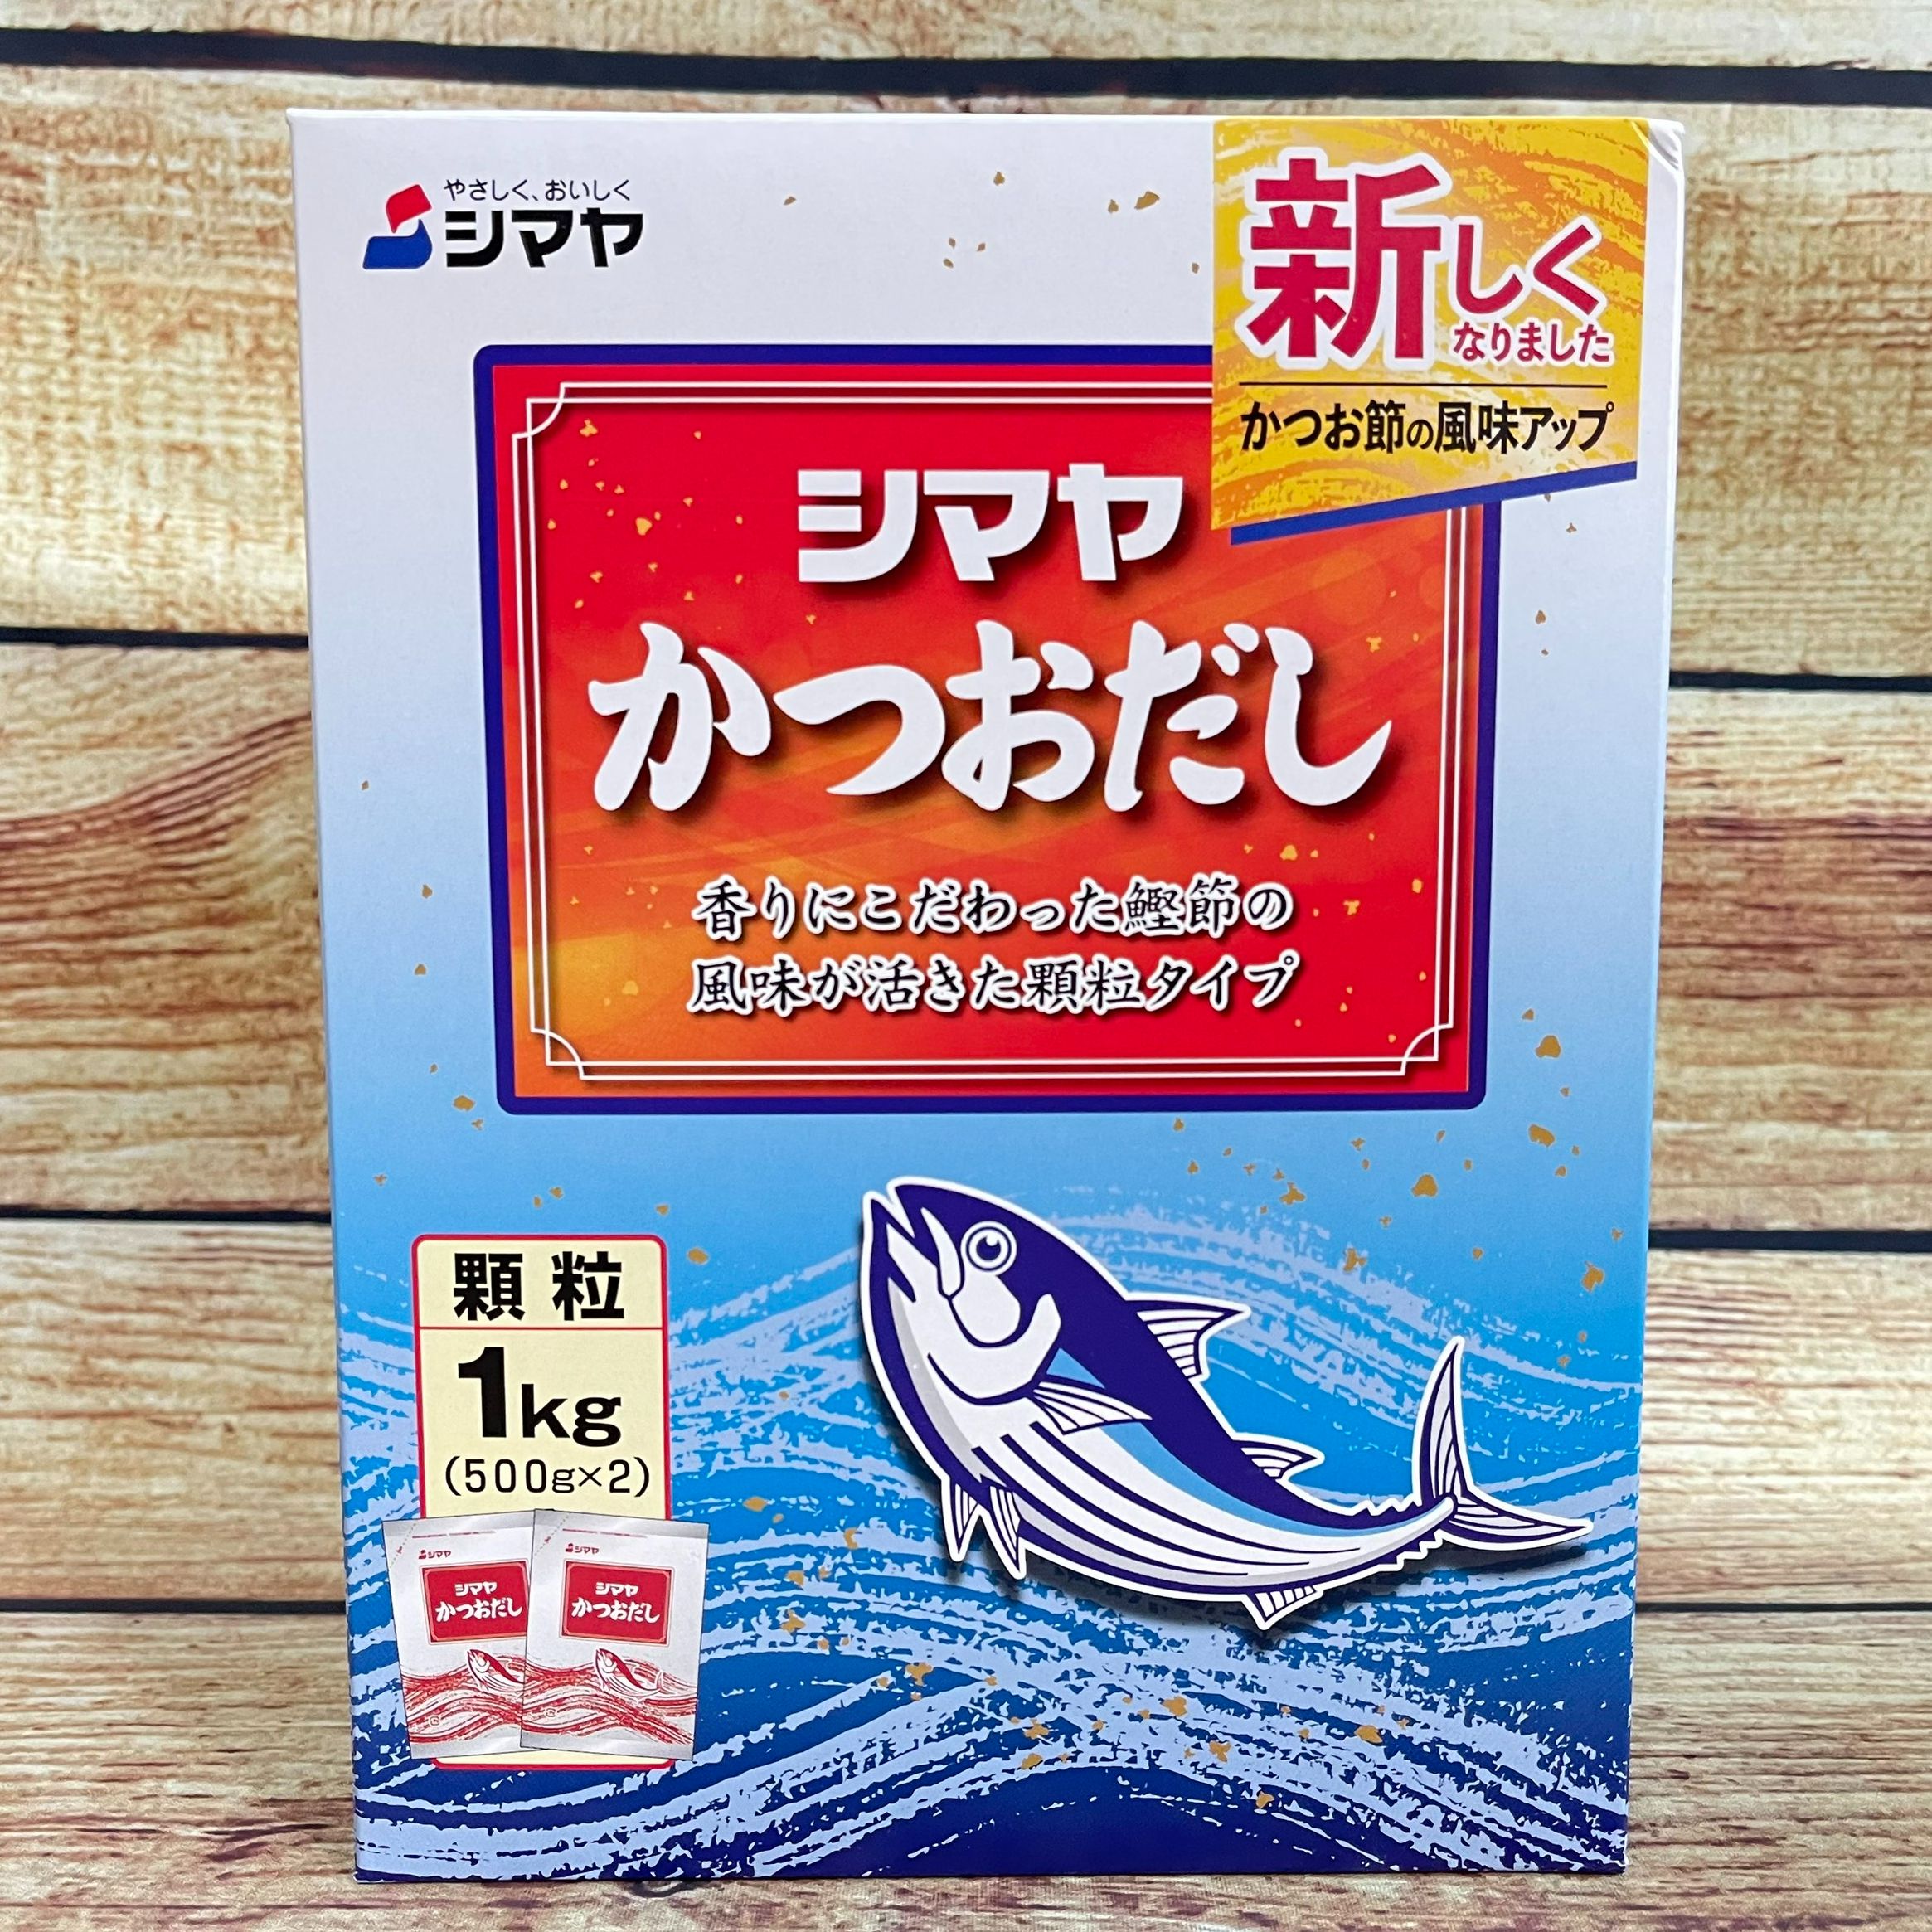 Hạt nêm từ cá ngừ katsuo dashi SHIMAYA hộp 1kg Chia 2 gói 500g tiện lợi